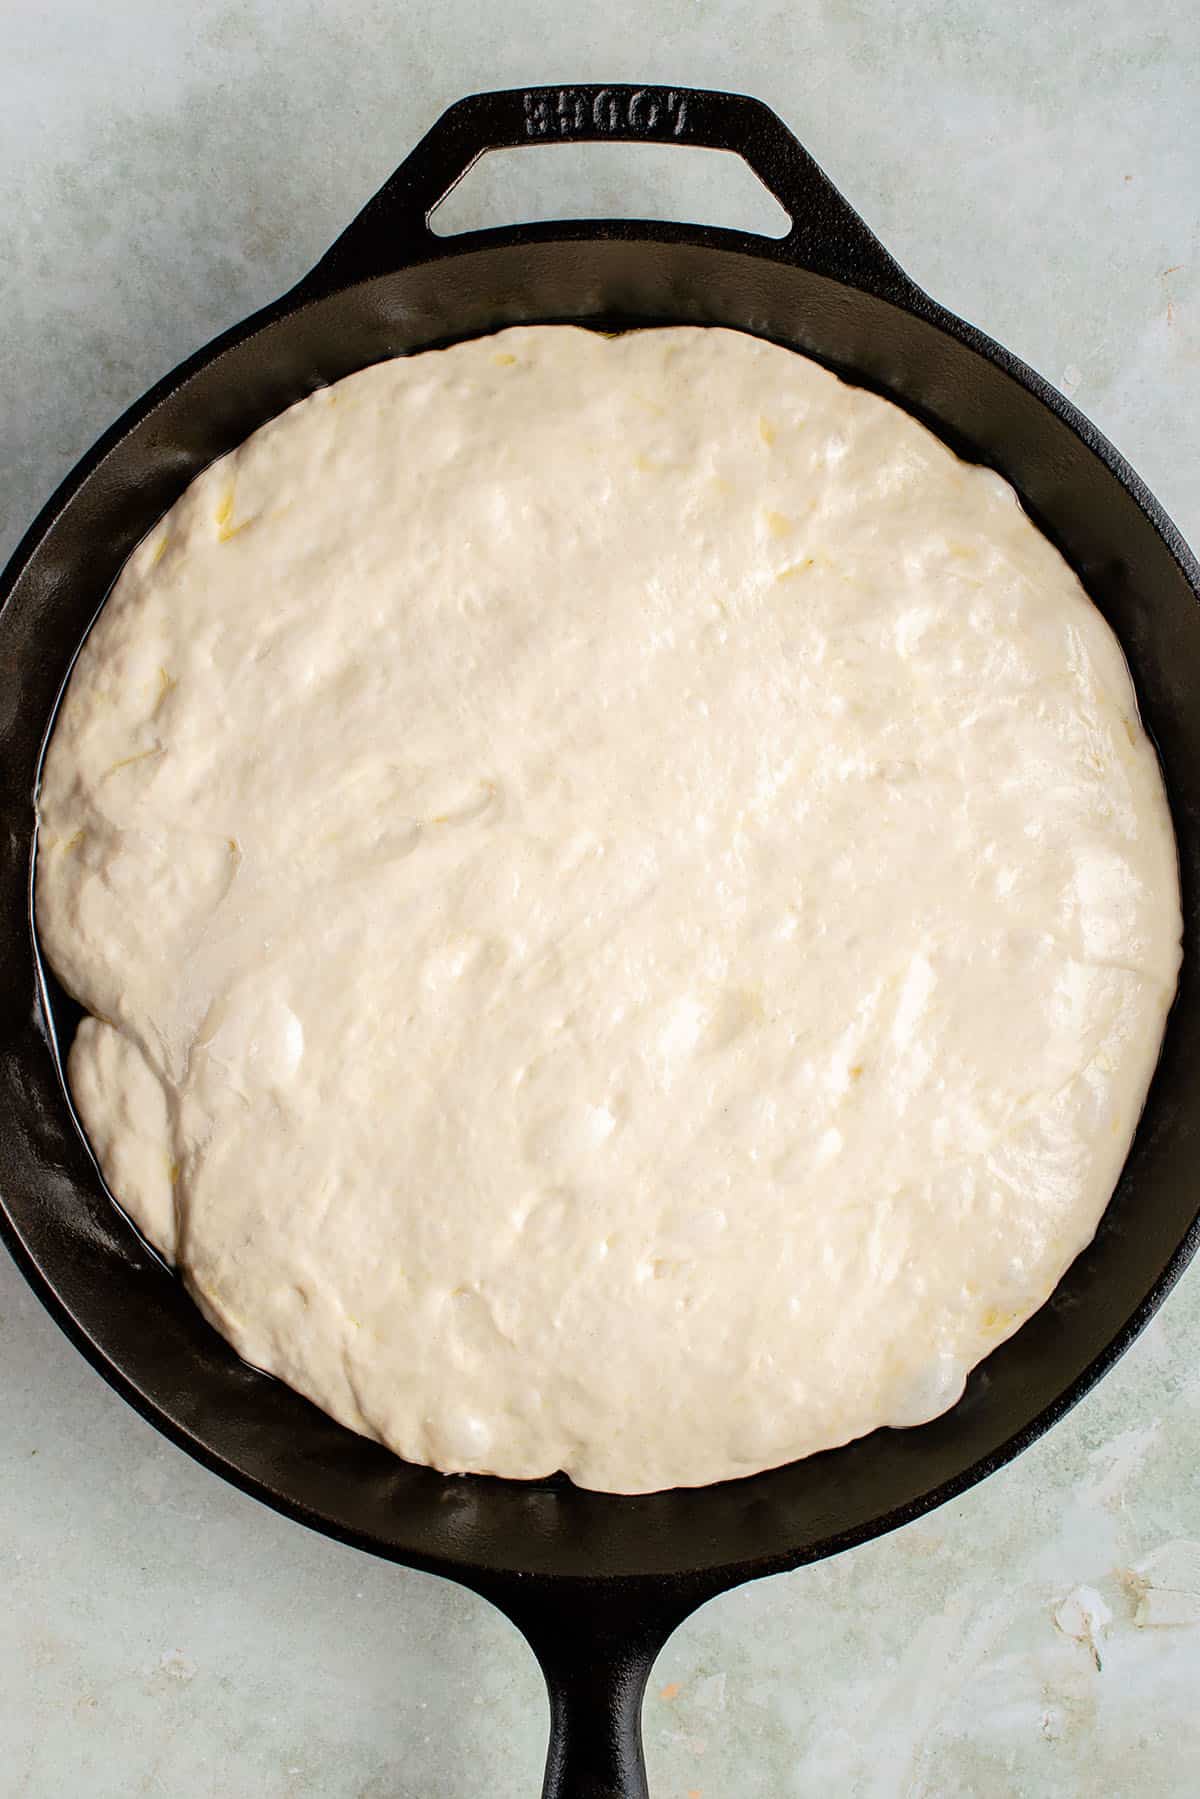 risen focaccia dough in skillet